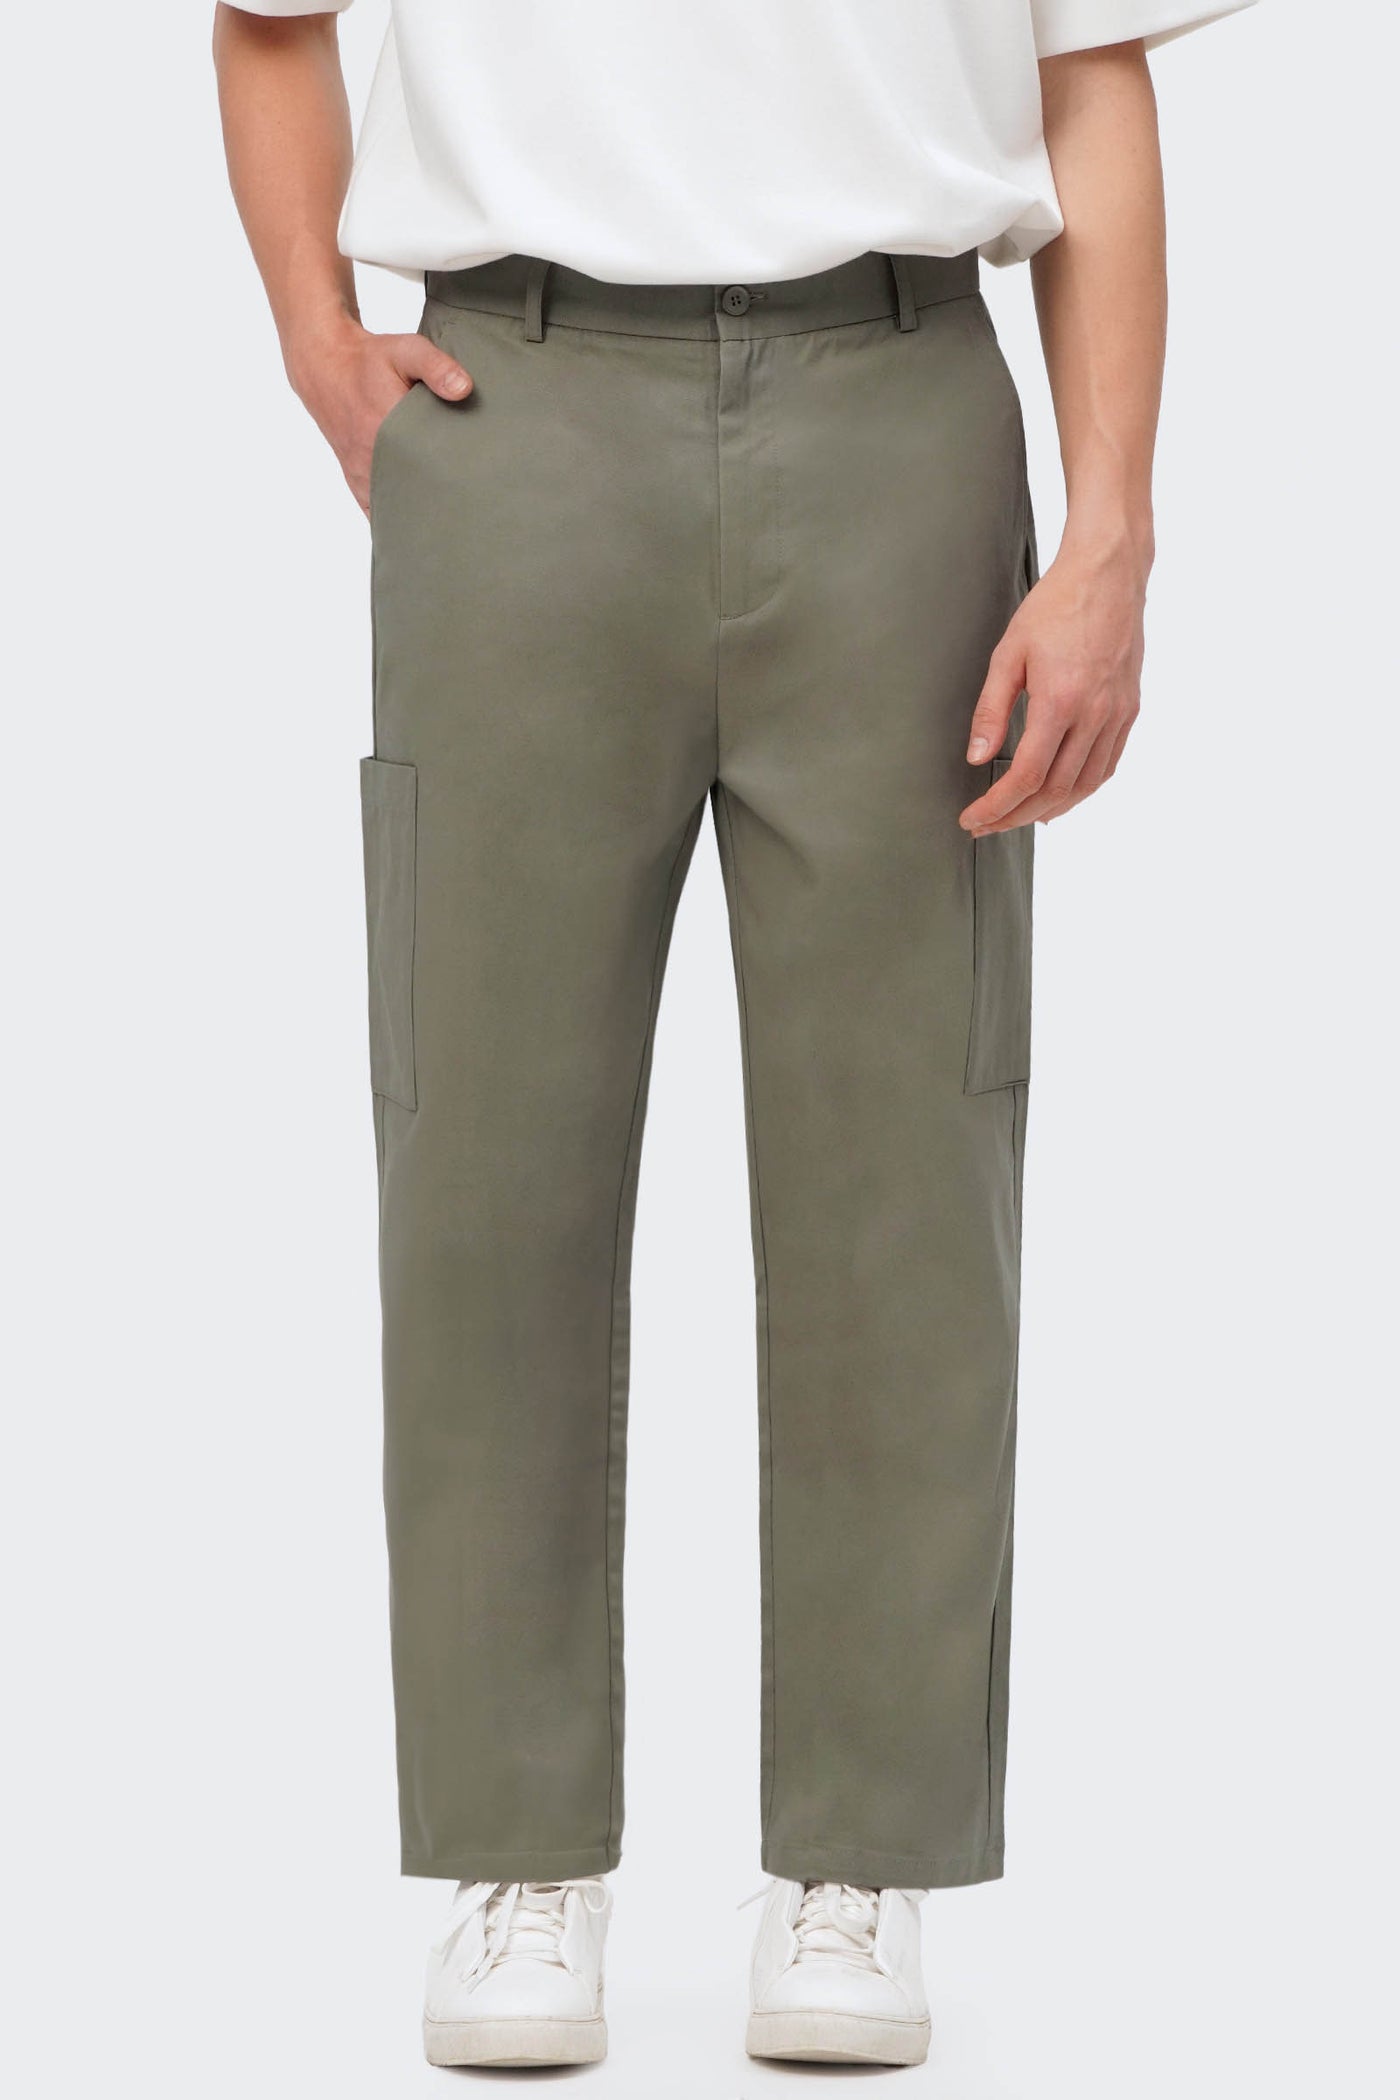 Men's Straight Leg Side Cargo Pocket Trousers